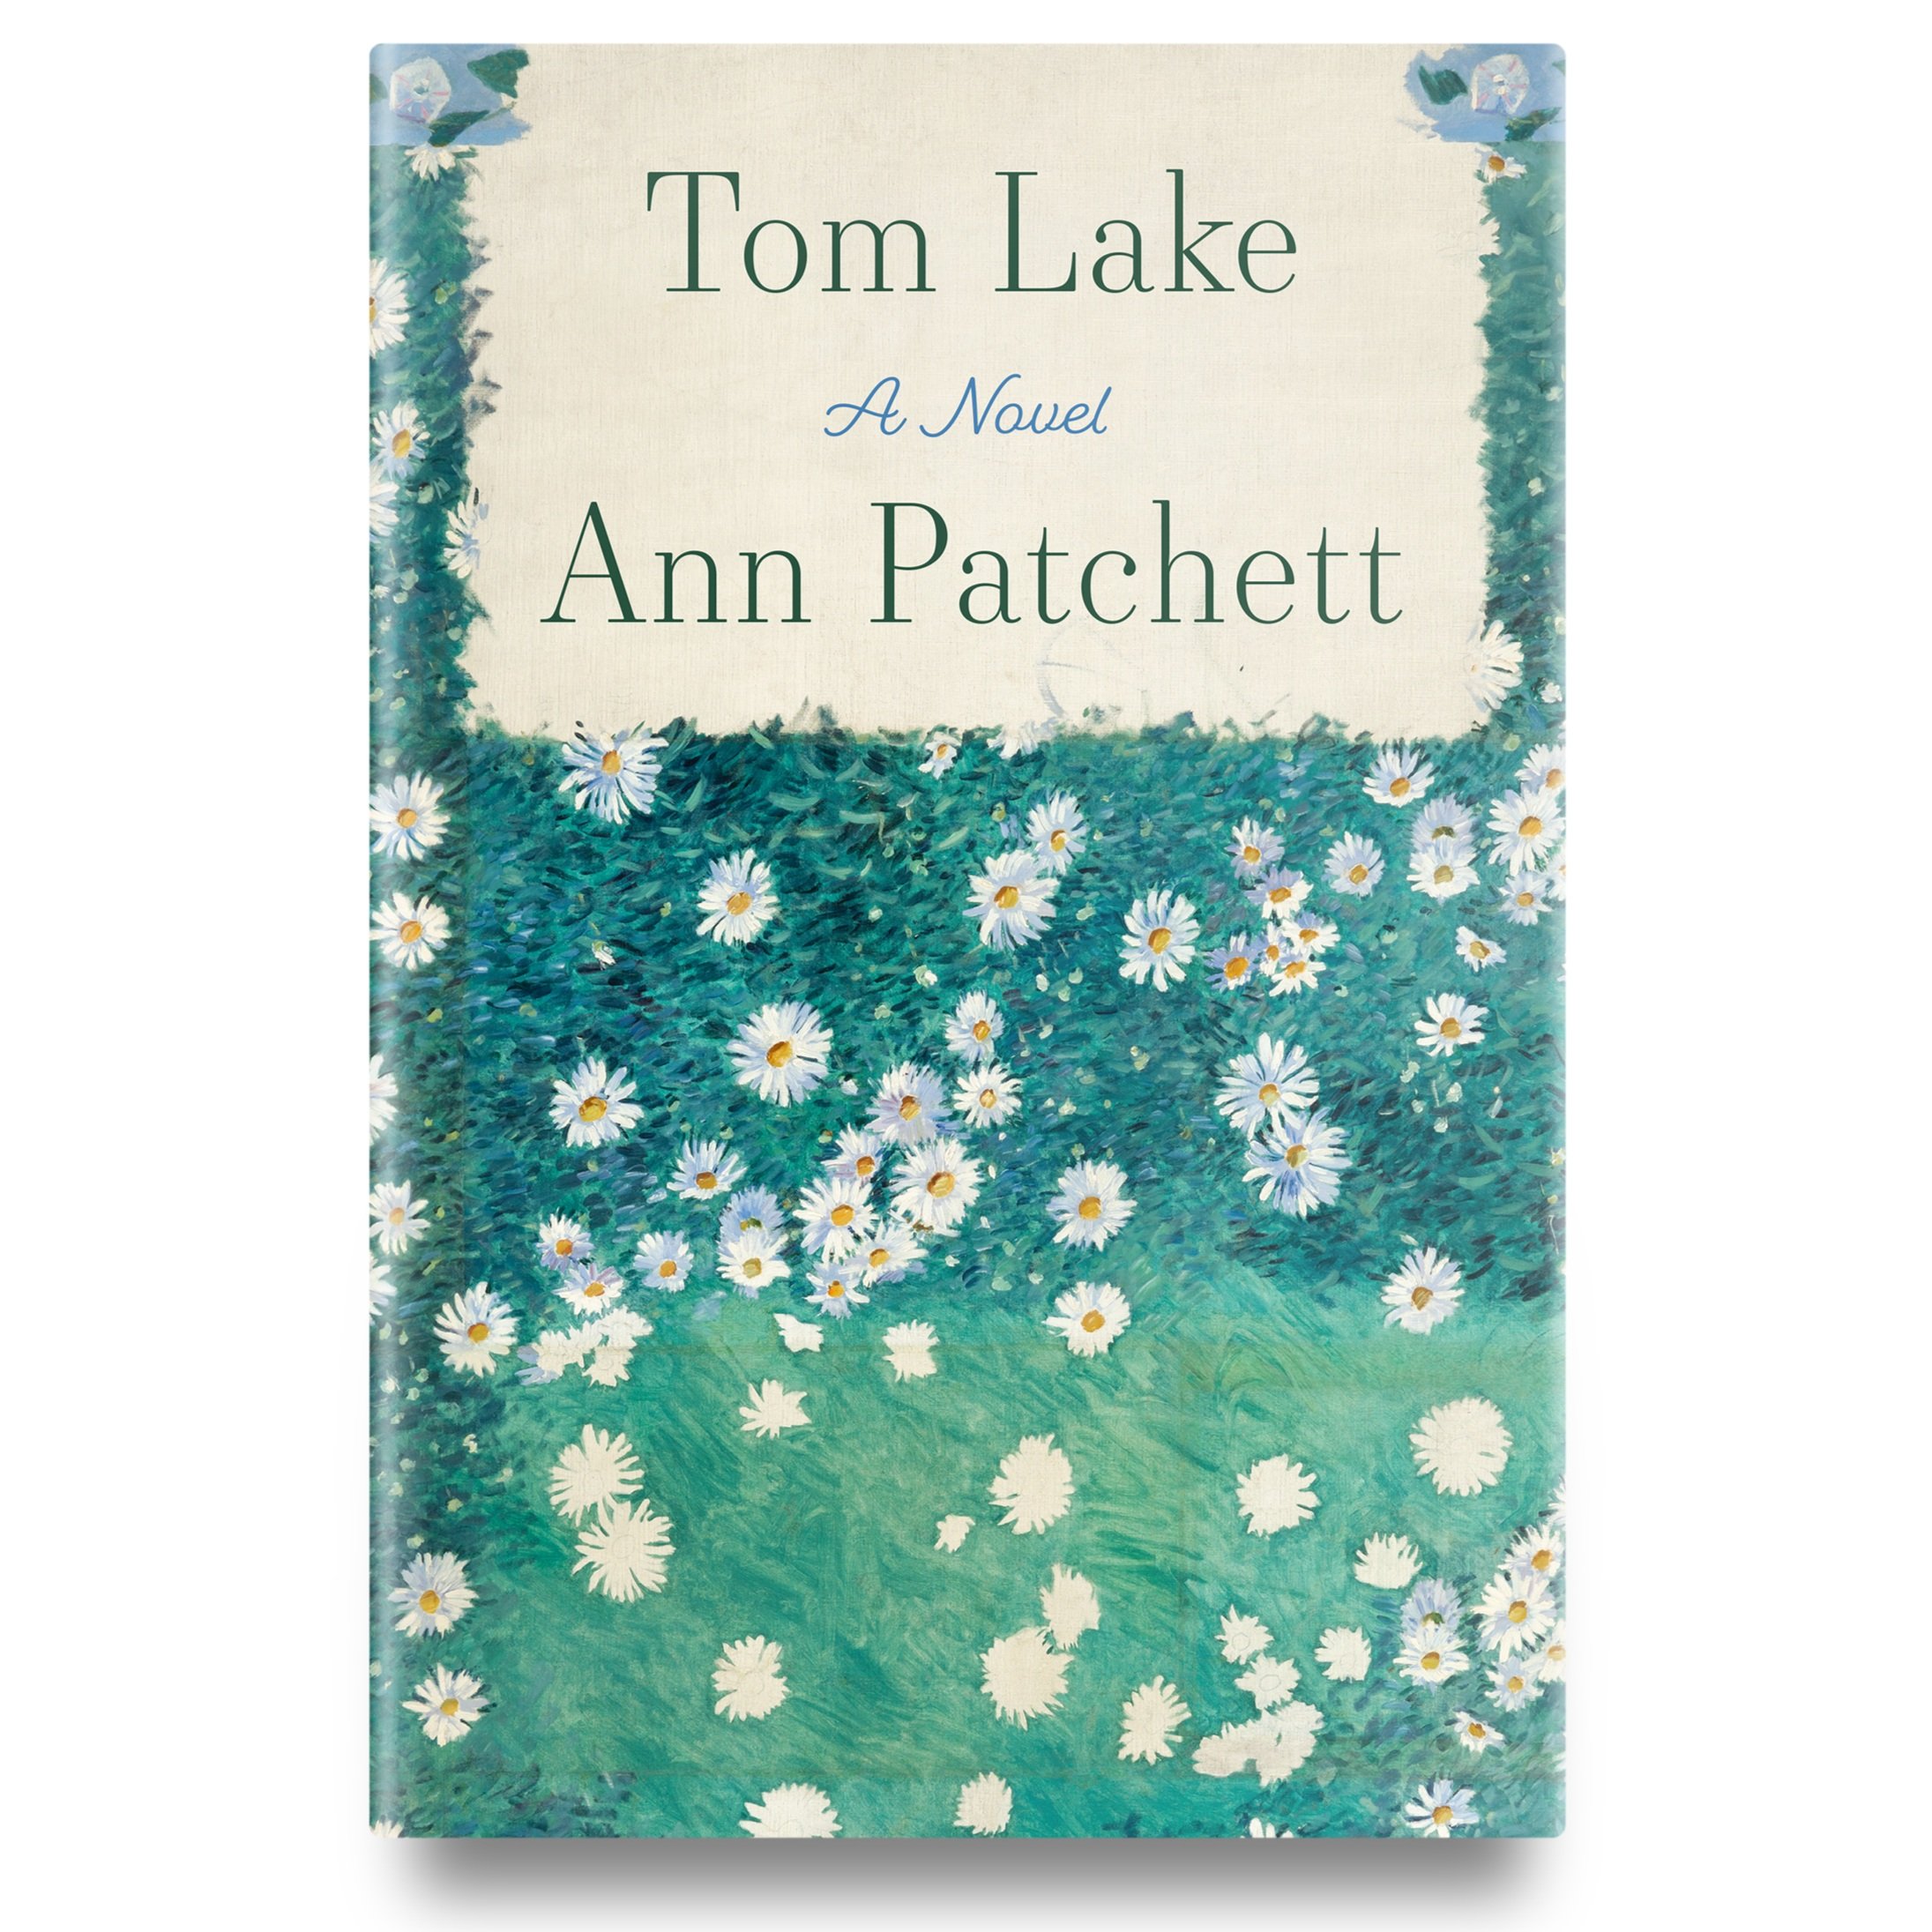 Tom Lake by Ann Pachett